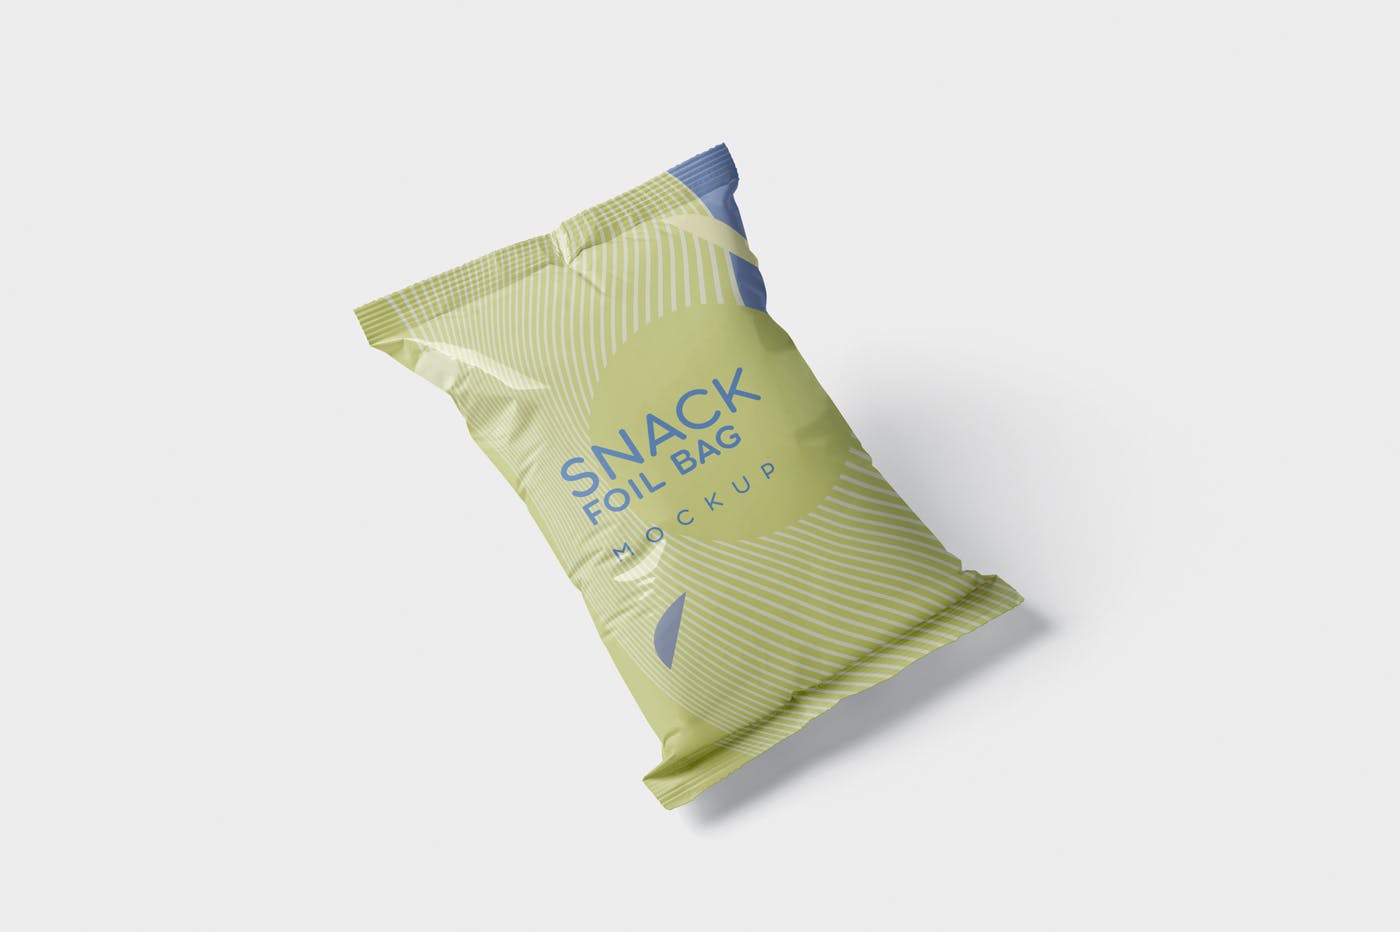 小吃零食铝箔袋/塑料包装袋设计图第一素材精选 Snack Foil Bag Mockup – Plastic插图(3)